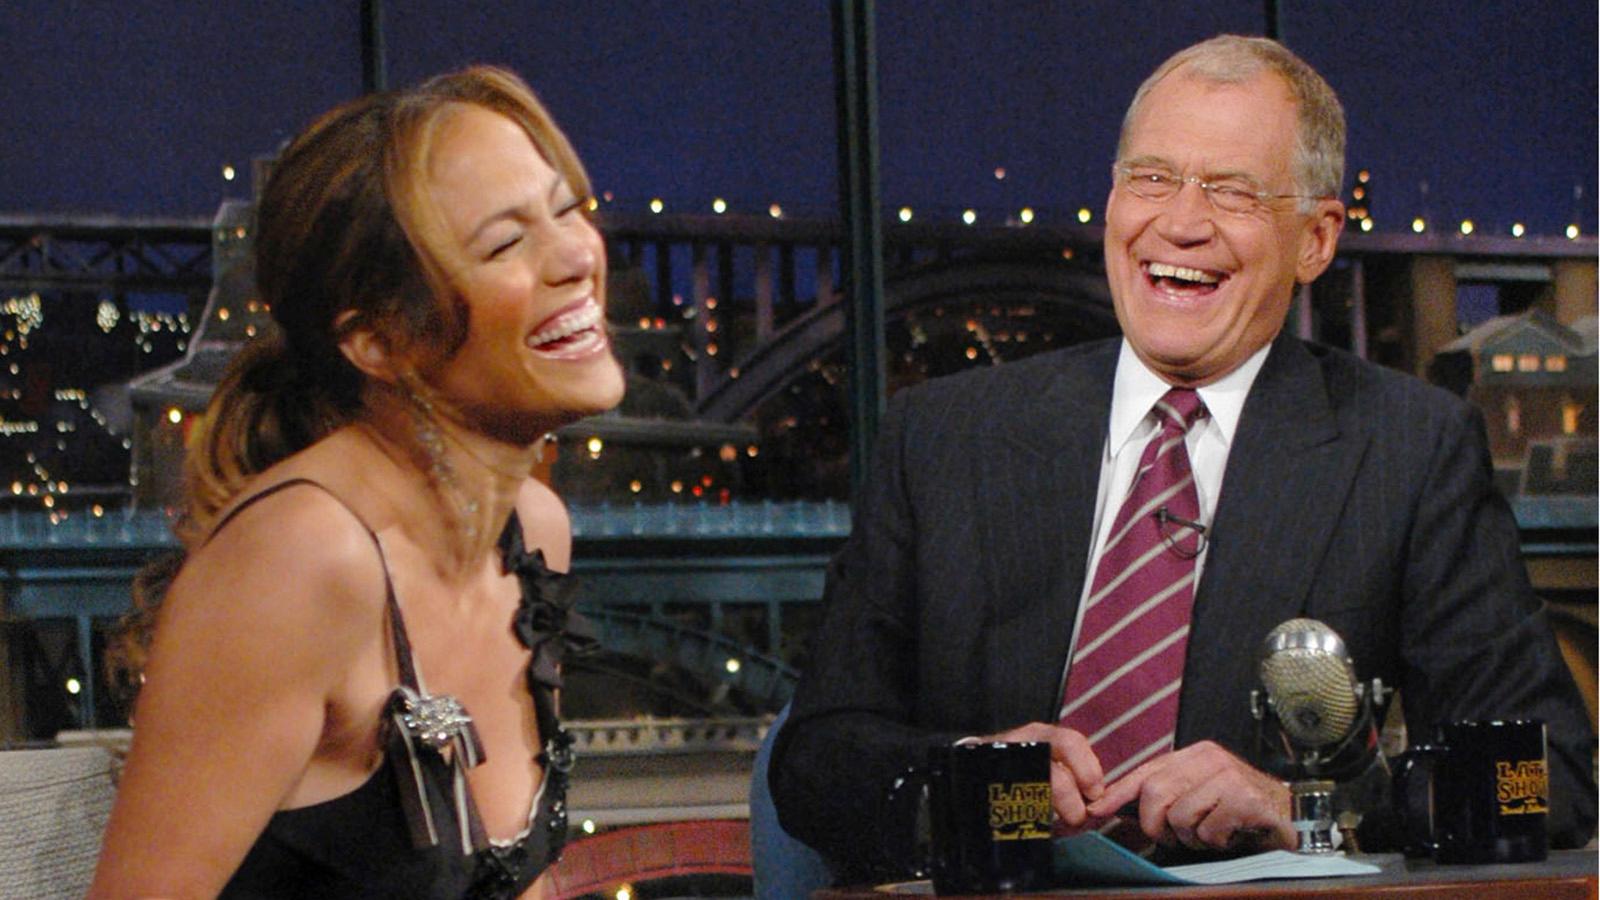 Klassiska ”Late show” med David Letterman, som här gästas av Jennifer Lopez.